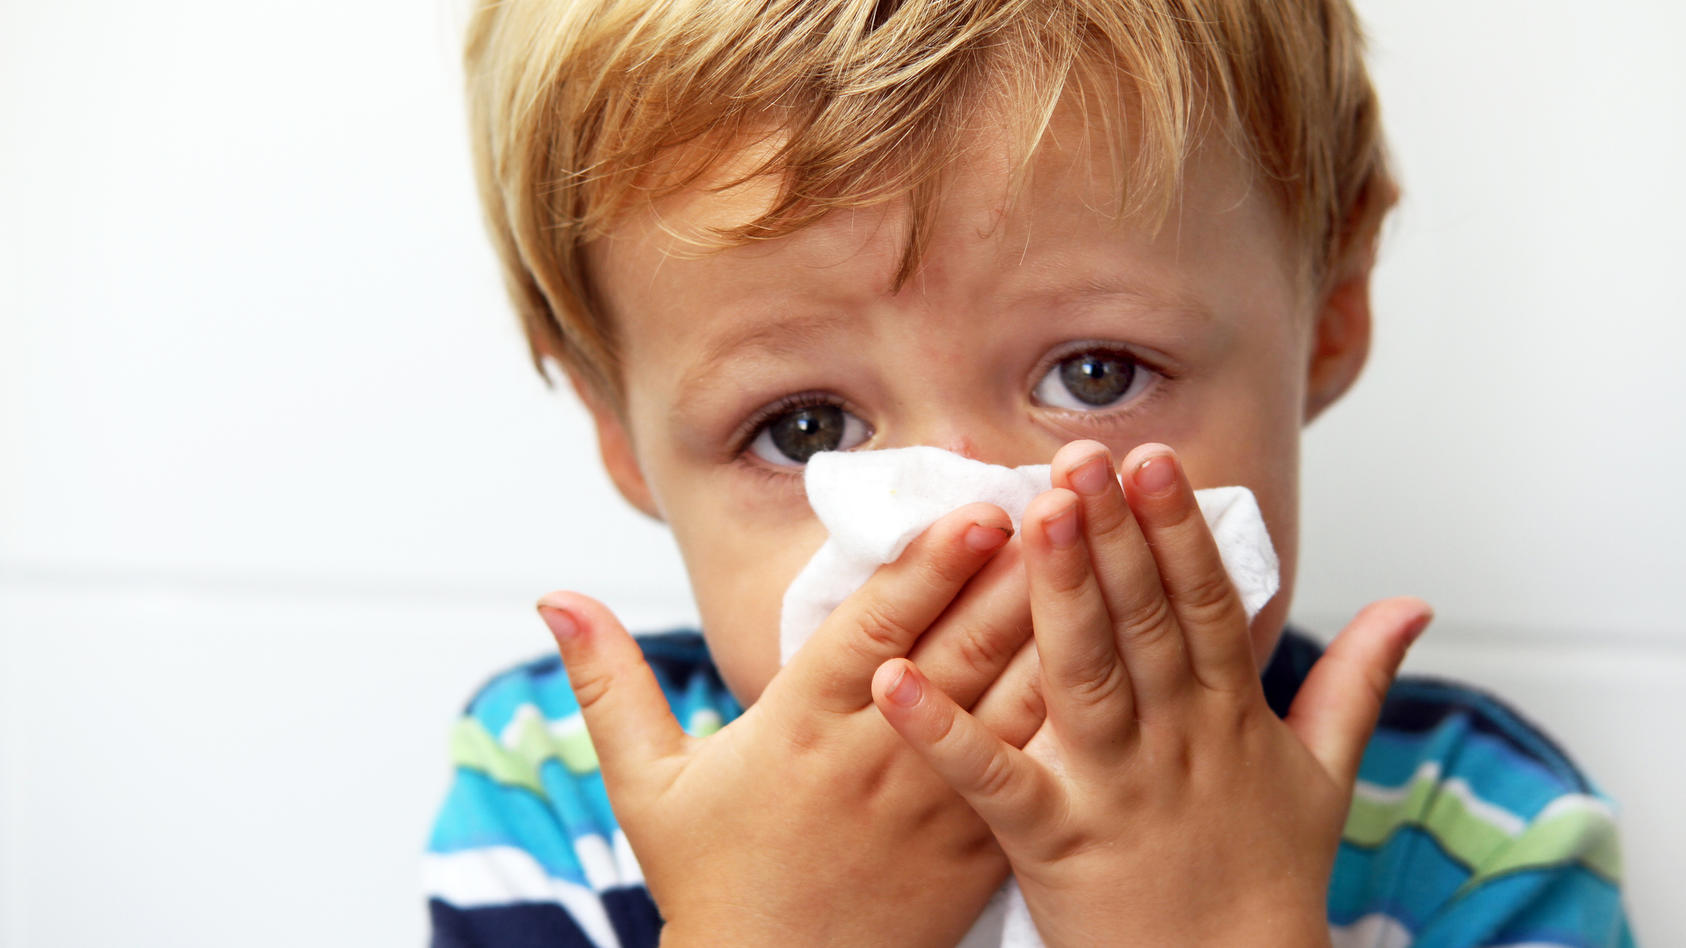 Kind putzt seine Nase in ein Taschentuch - eine Virenschleuder